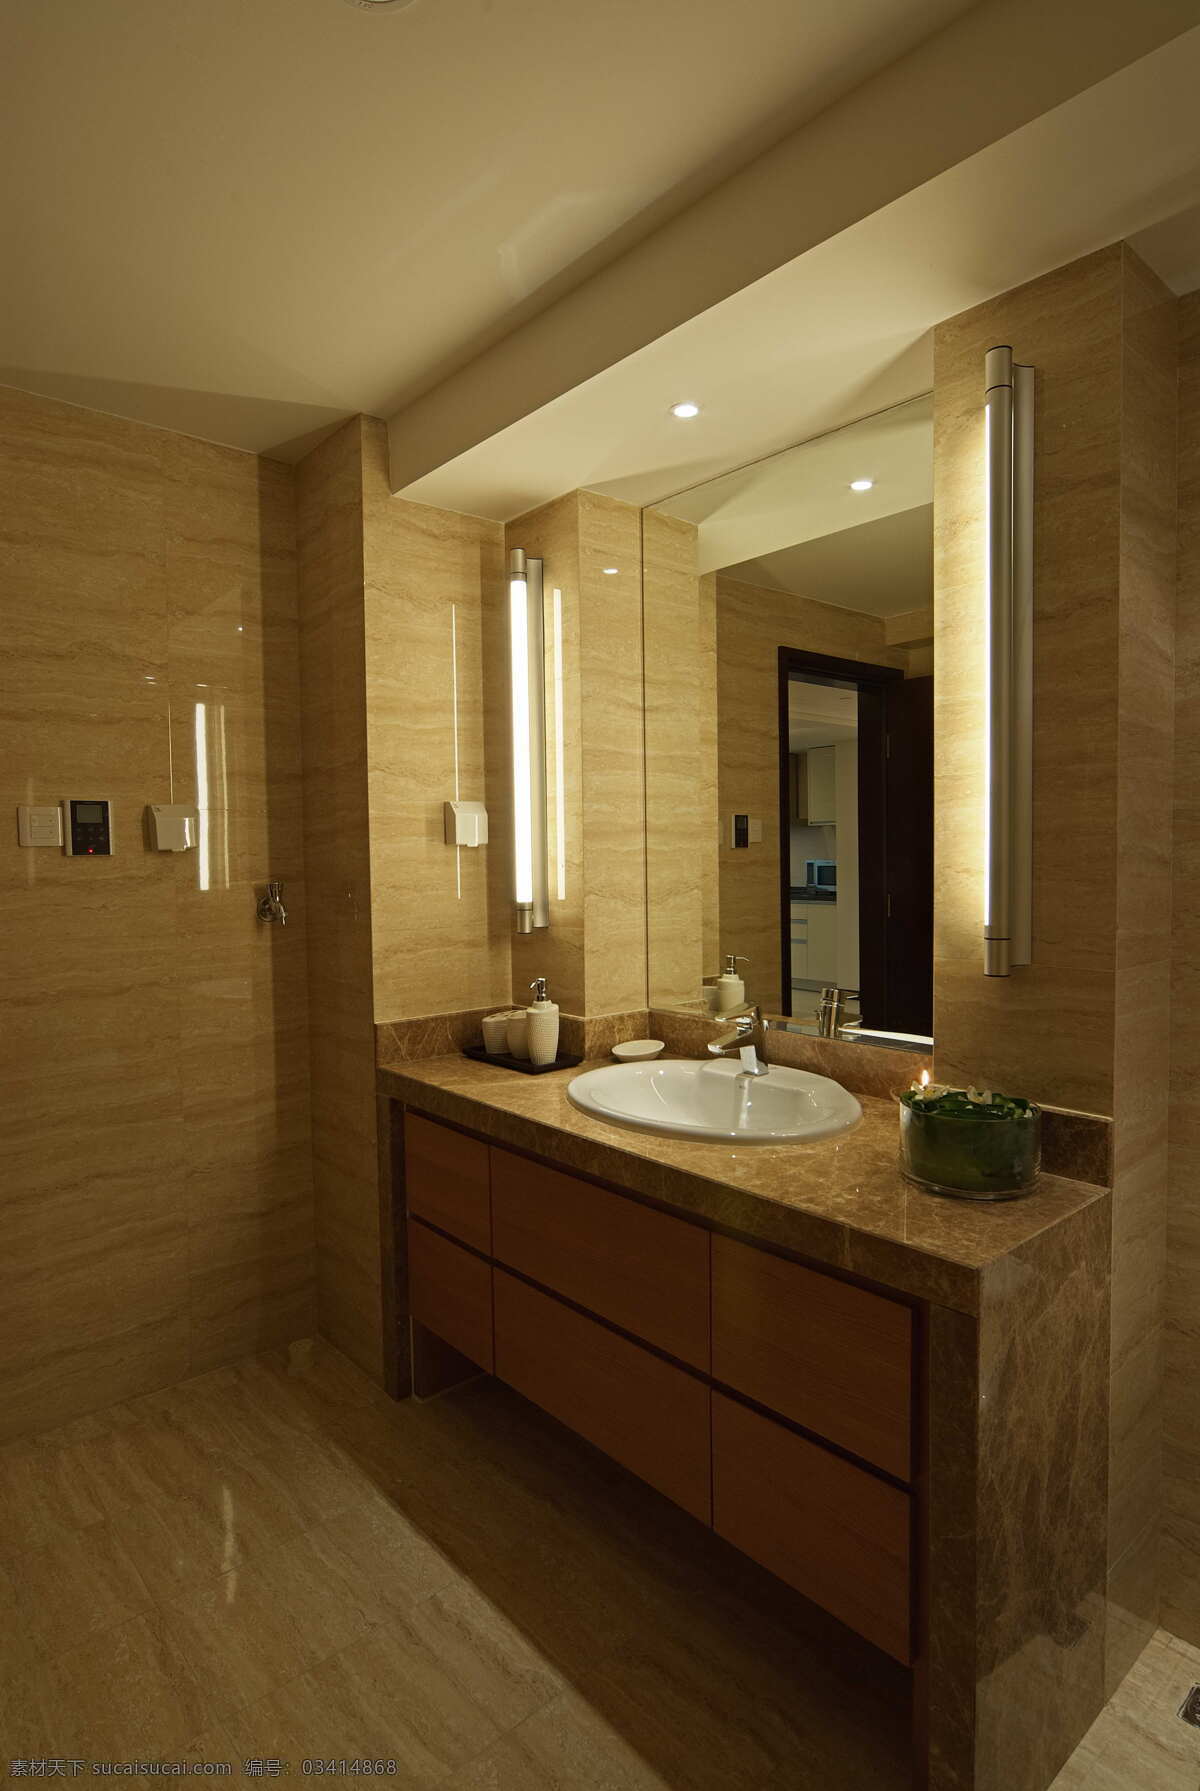 简约 风 室内设计 盥洗室 台面 效果图 现代 家装 家居 家具 洗脸池